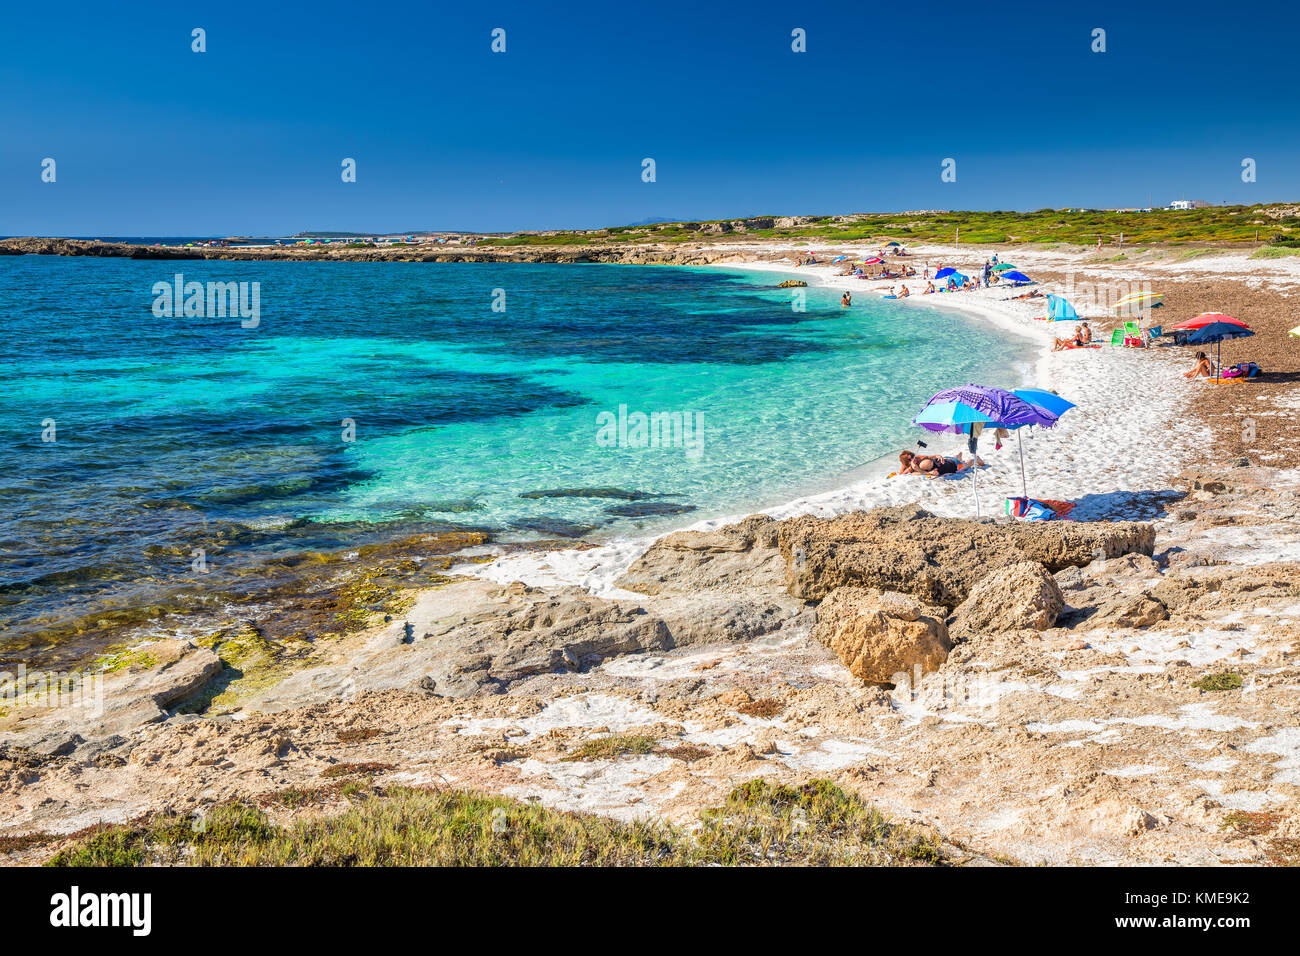 IS ARUTAS, SARDEGNA - Luglio 2017 - Is Arutas spiaggia, Sardegna, Italia, Europa. Is Arutas è conosciuta come la spiaggia di chicchi di riso. Foto Stock